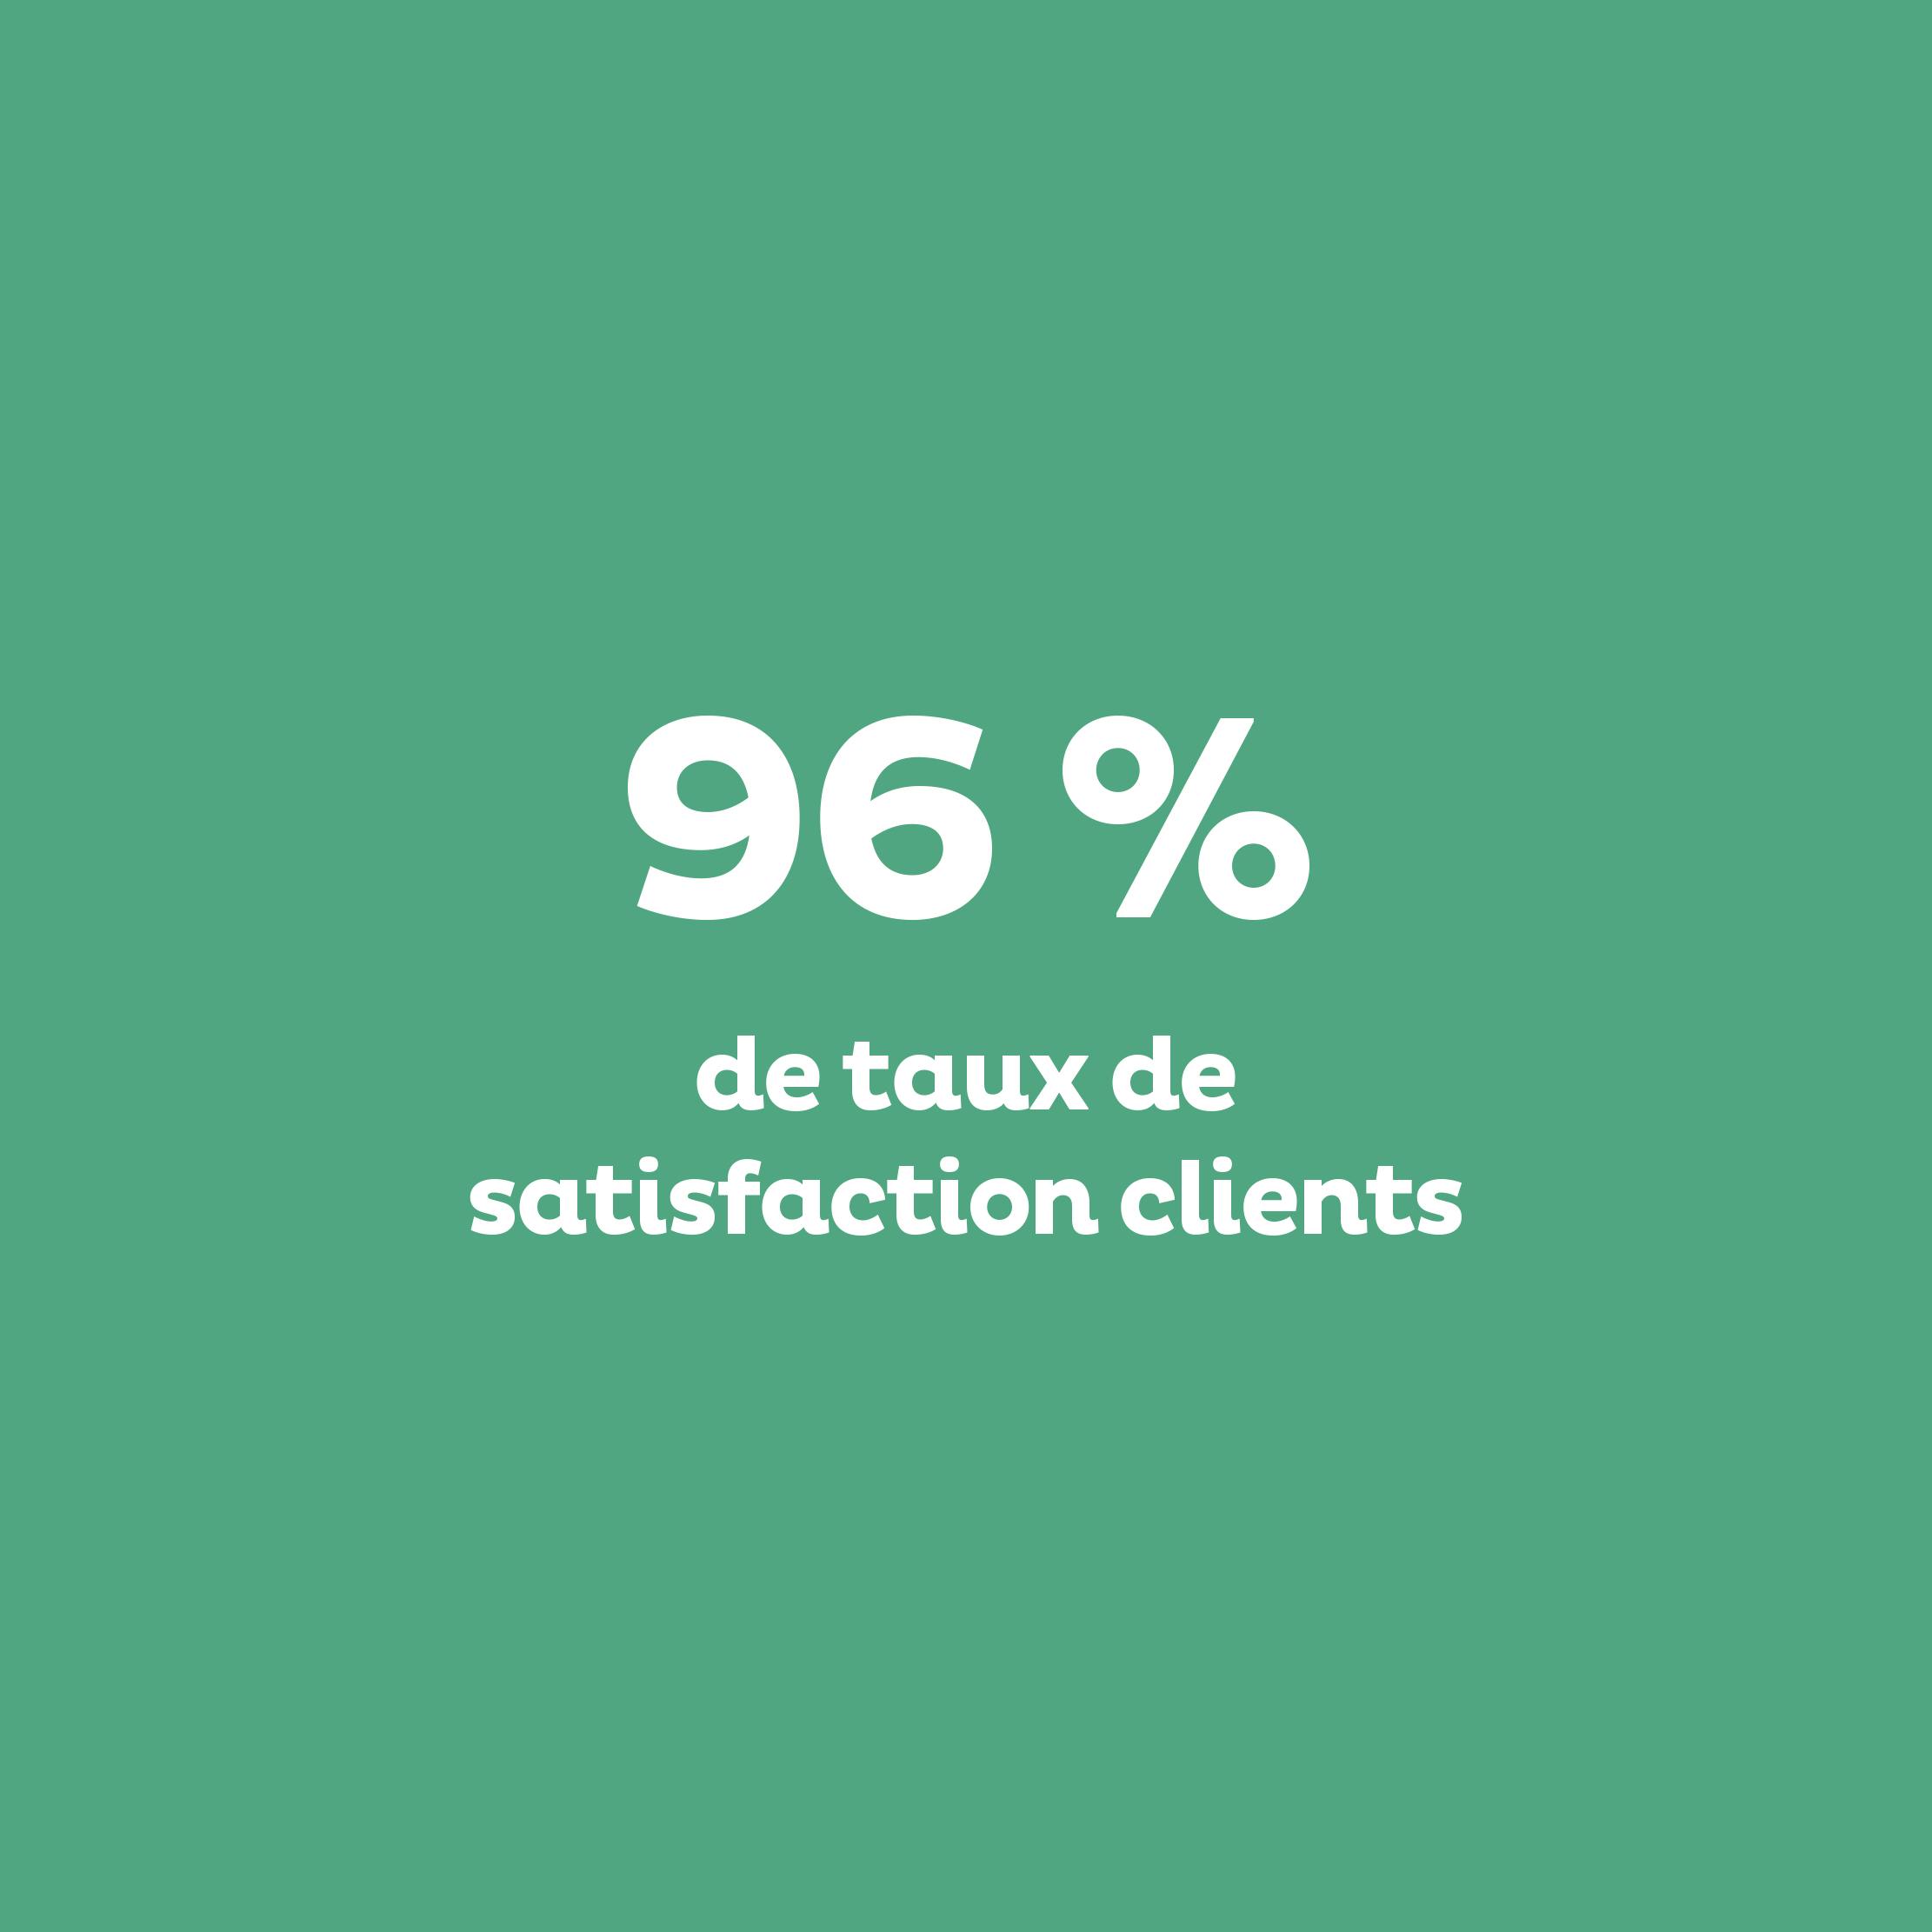 96% : taux de satisfaction clients